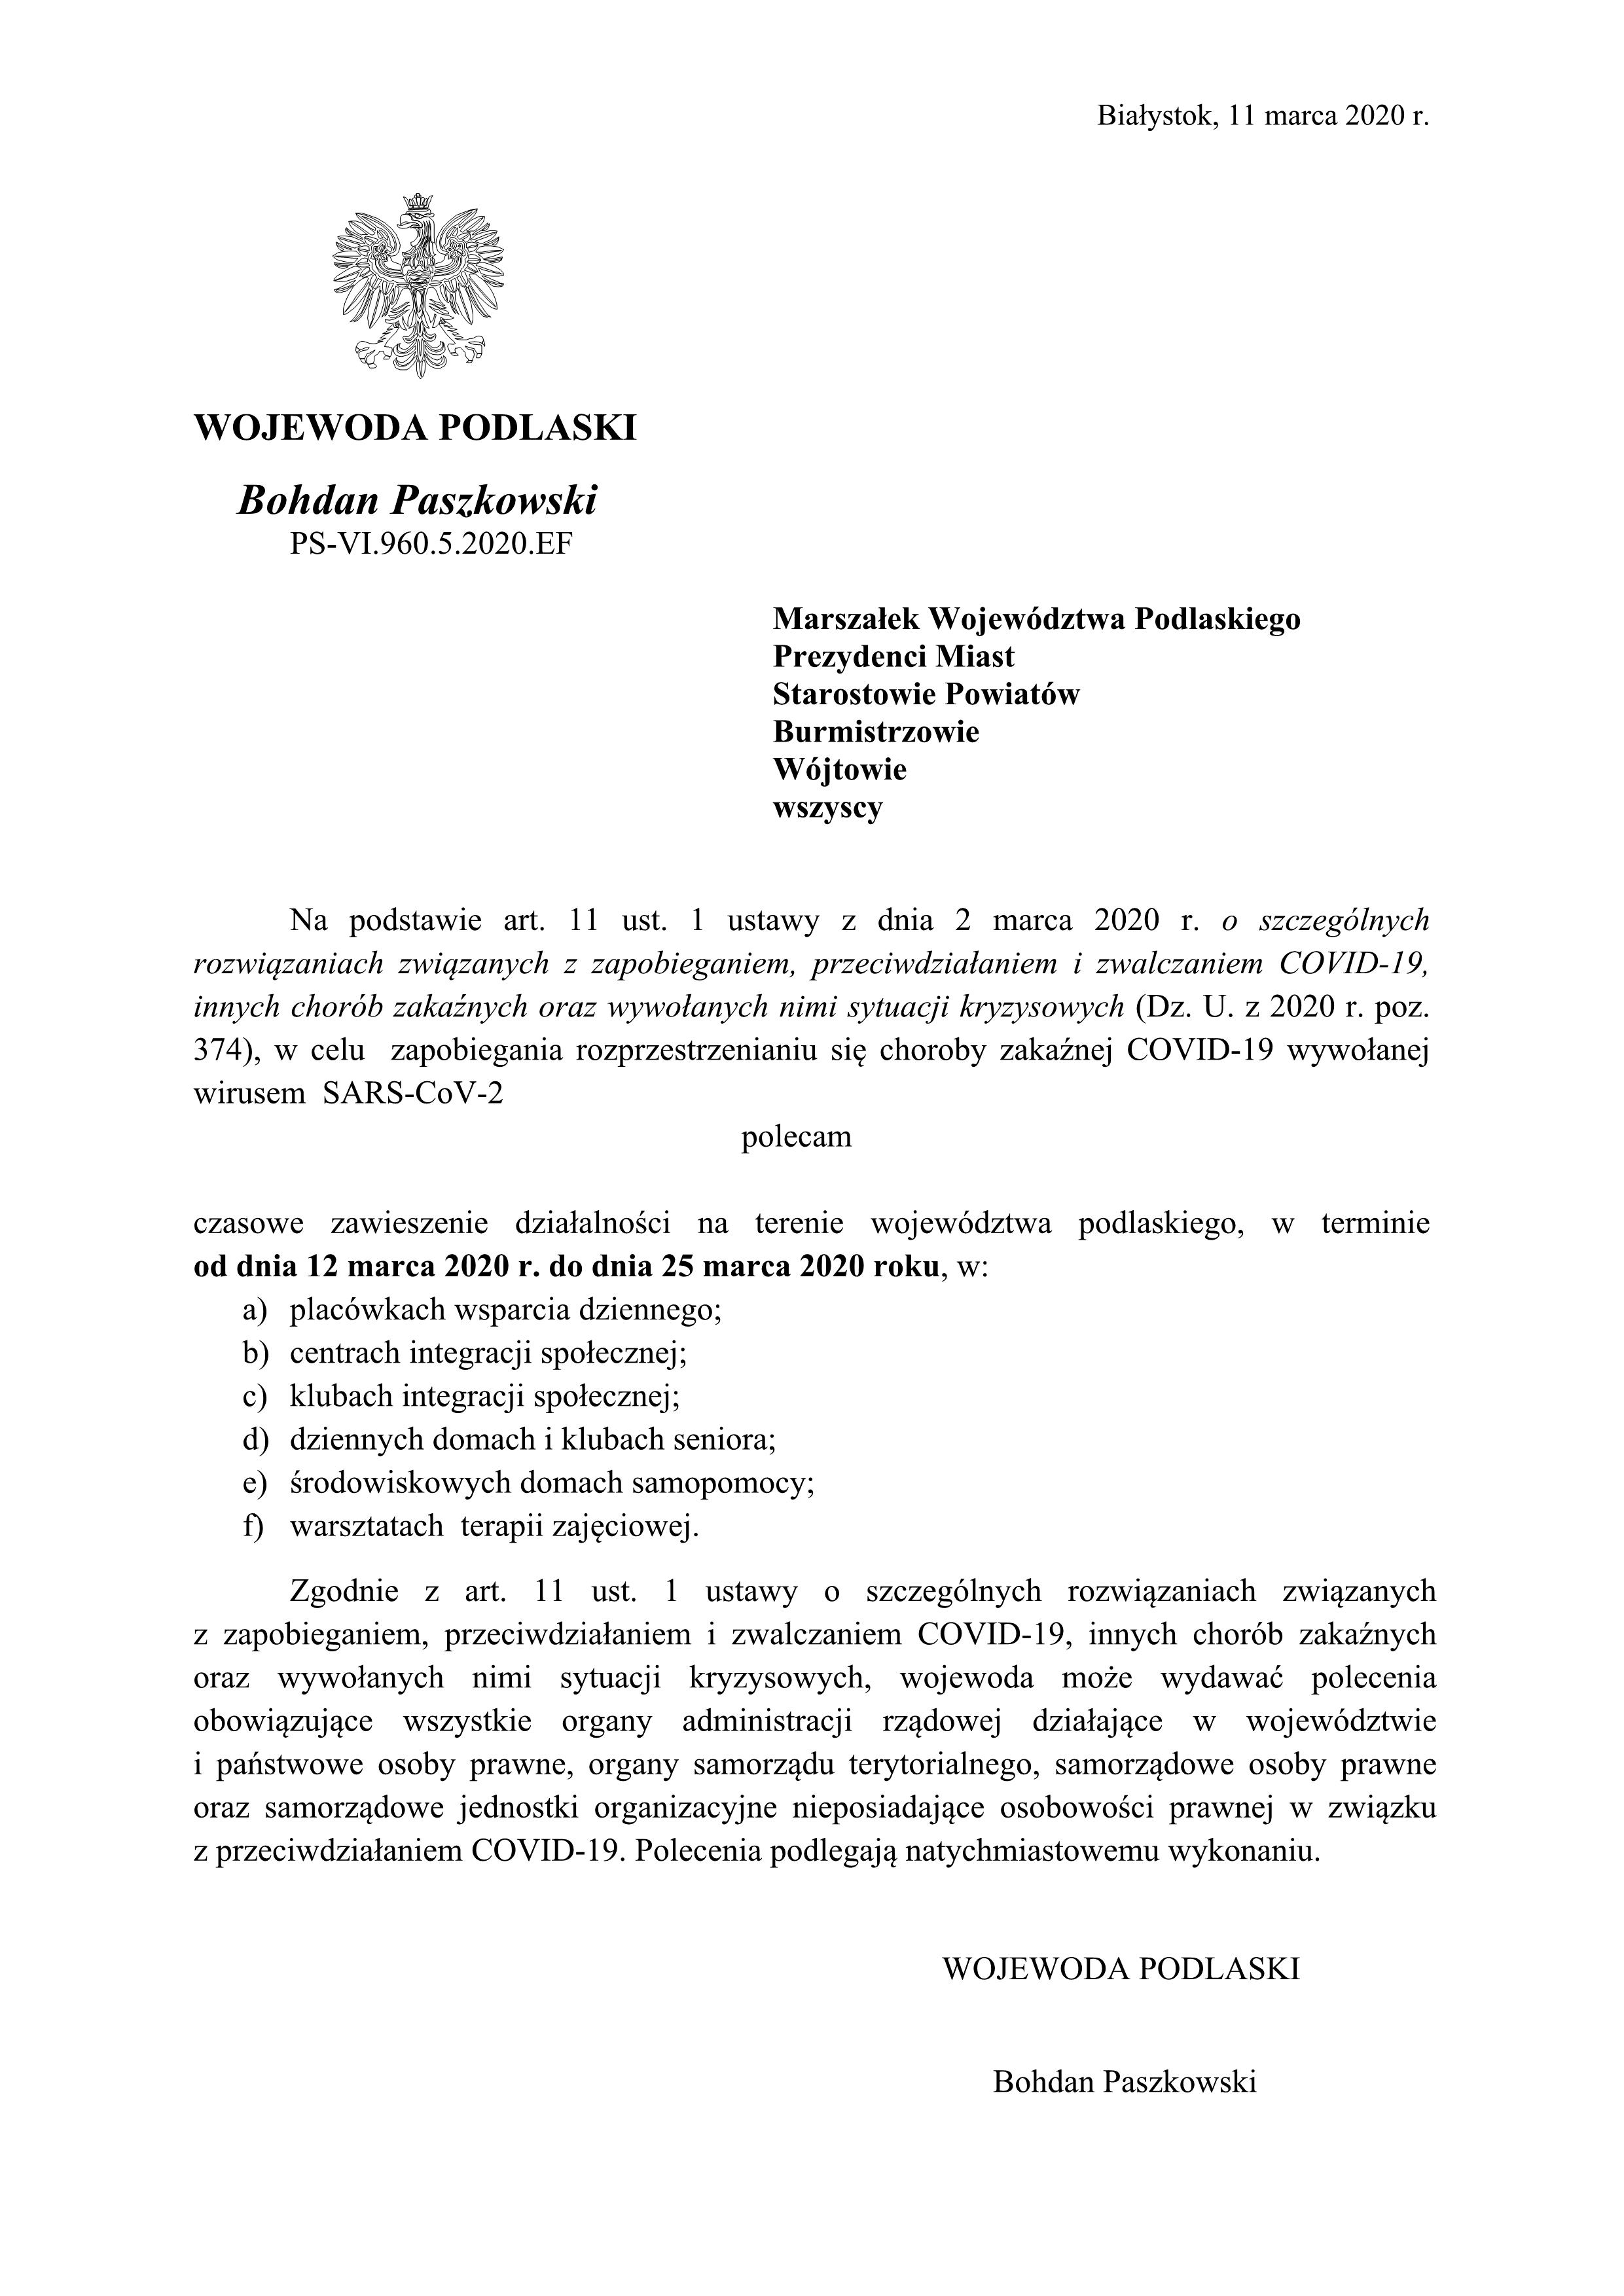 Pismo Wojewody Podlaskiego w sprawie zawieszenia dziaalnoci1